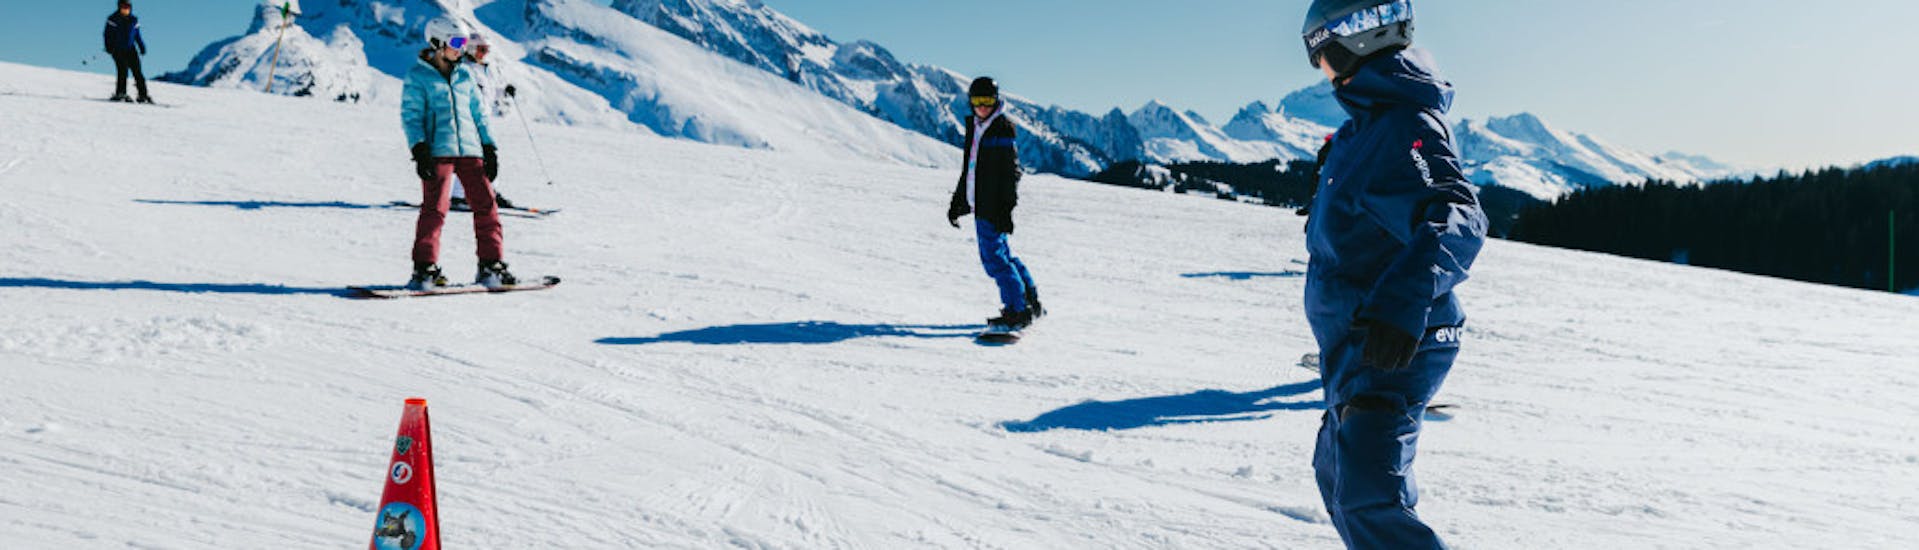 Clases de snowboard a partir de 8 años para debutantes con Evolution 2 Saint-Gervais.